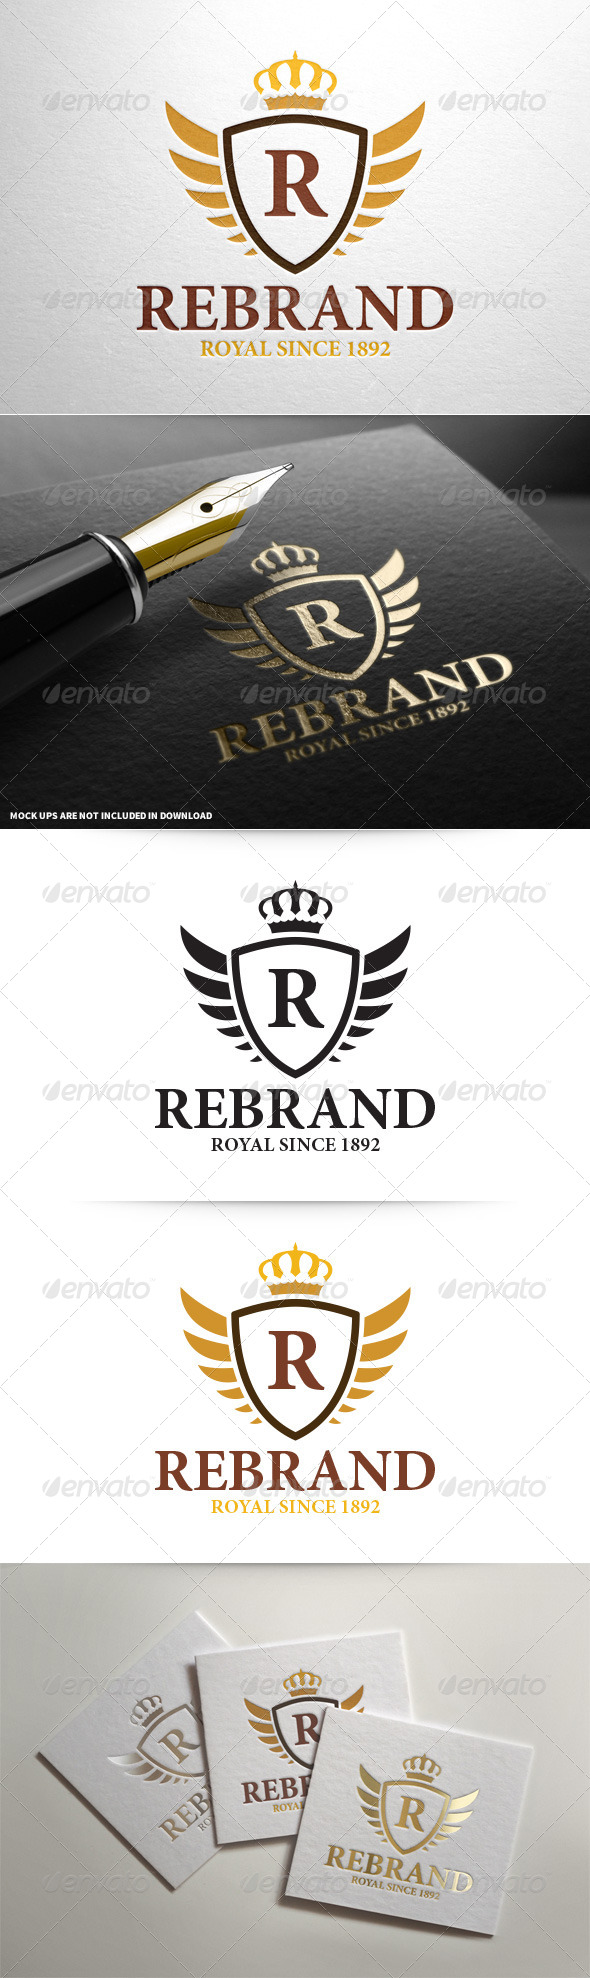 ReBrand - Royal Crest Letter Logo